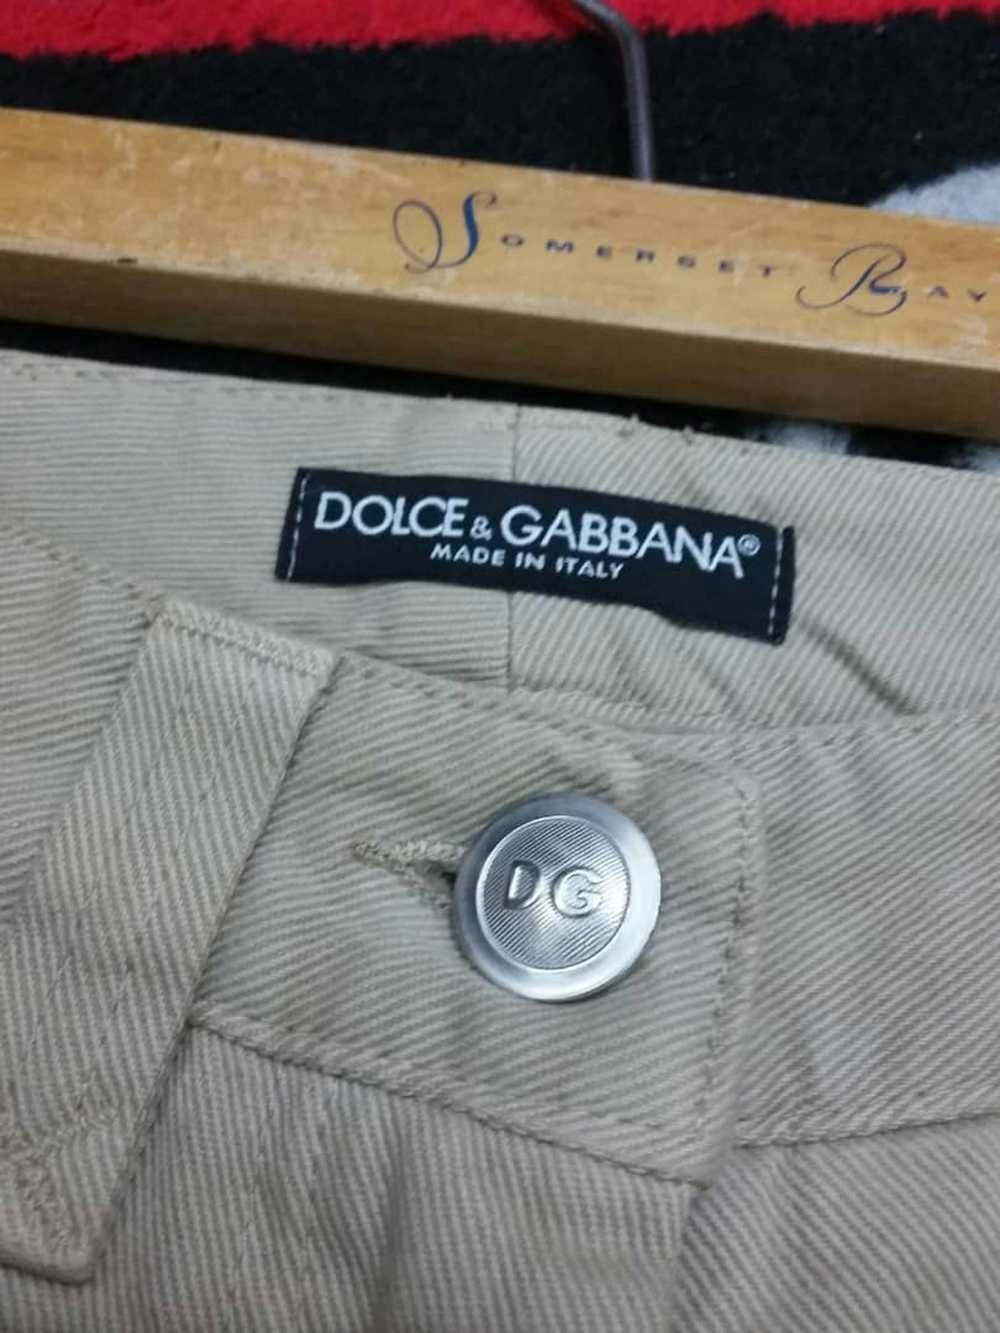 Dolce & Gabbana Dolce & Gabbana Pant - image 10